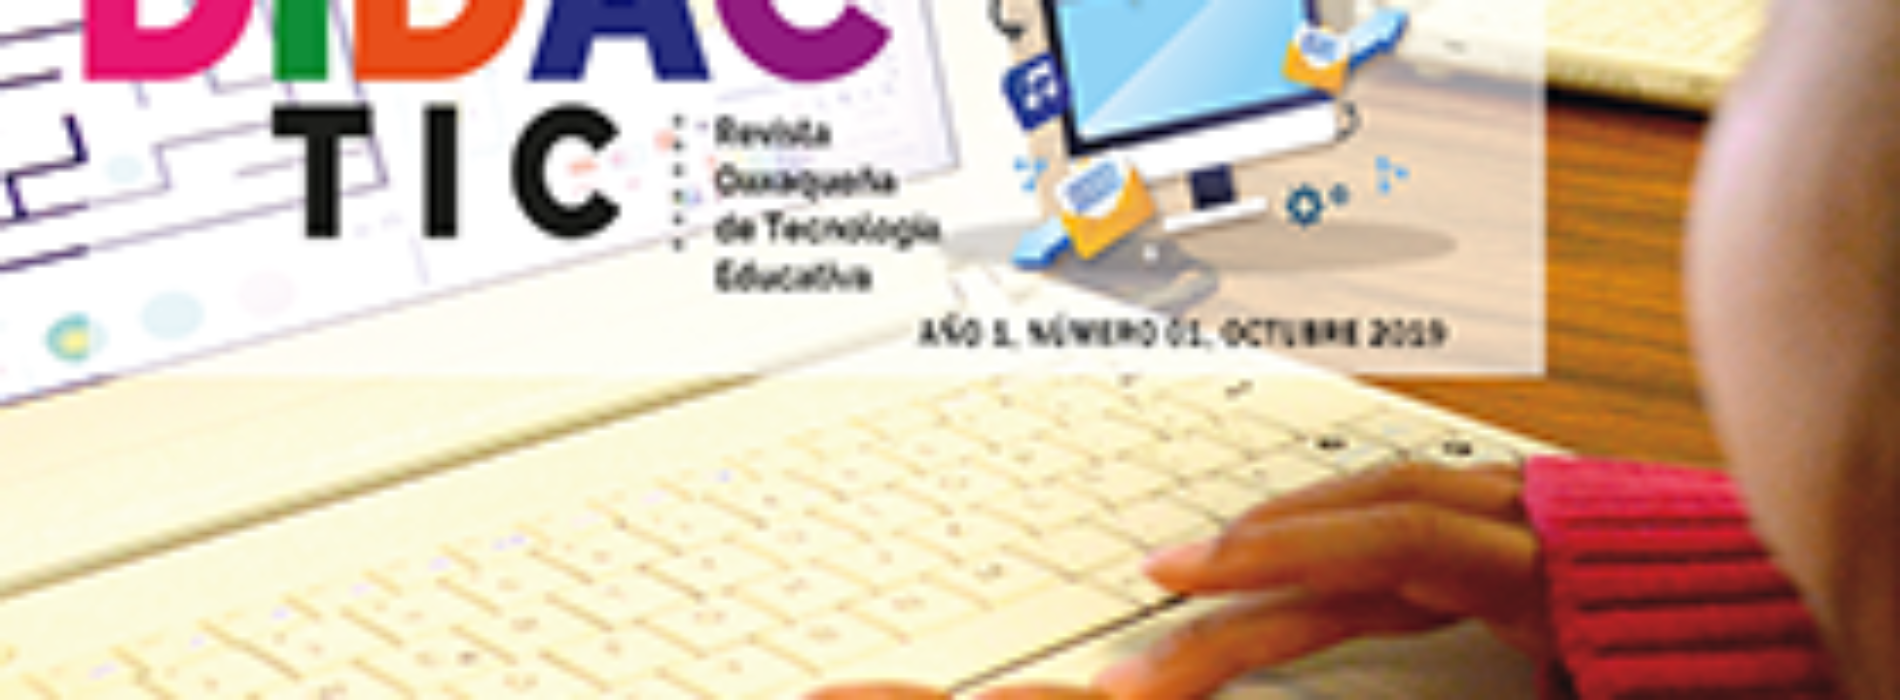 Revista electrónica DidacTIC una opción para aprender más sobre tecnología educativa